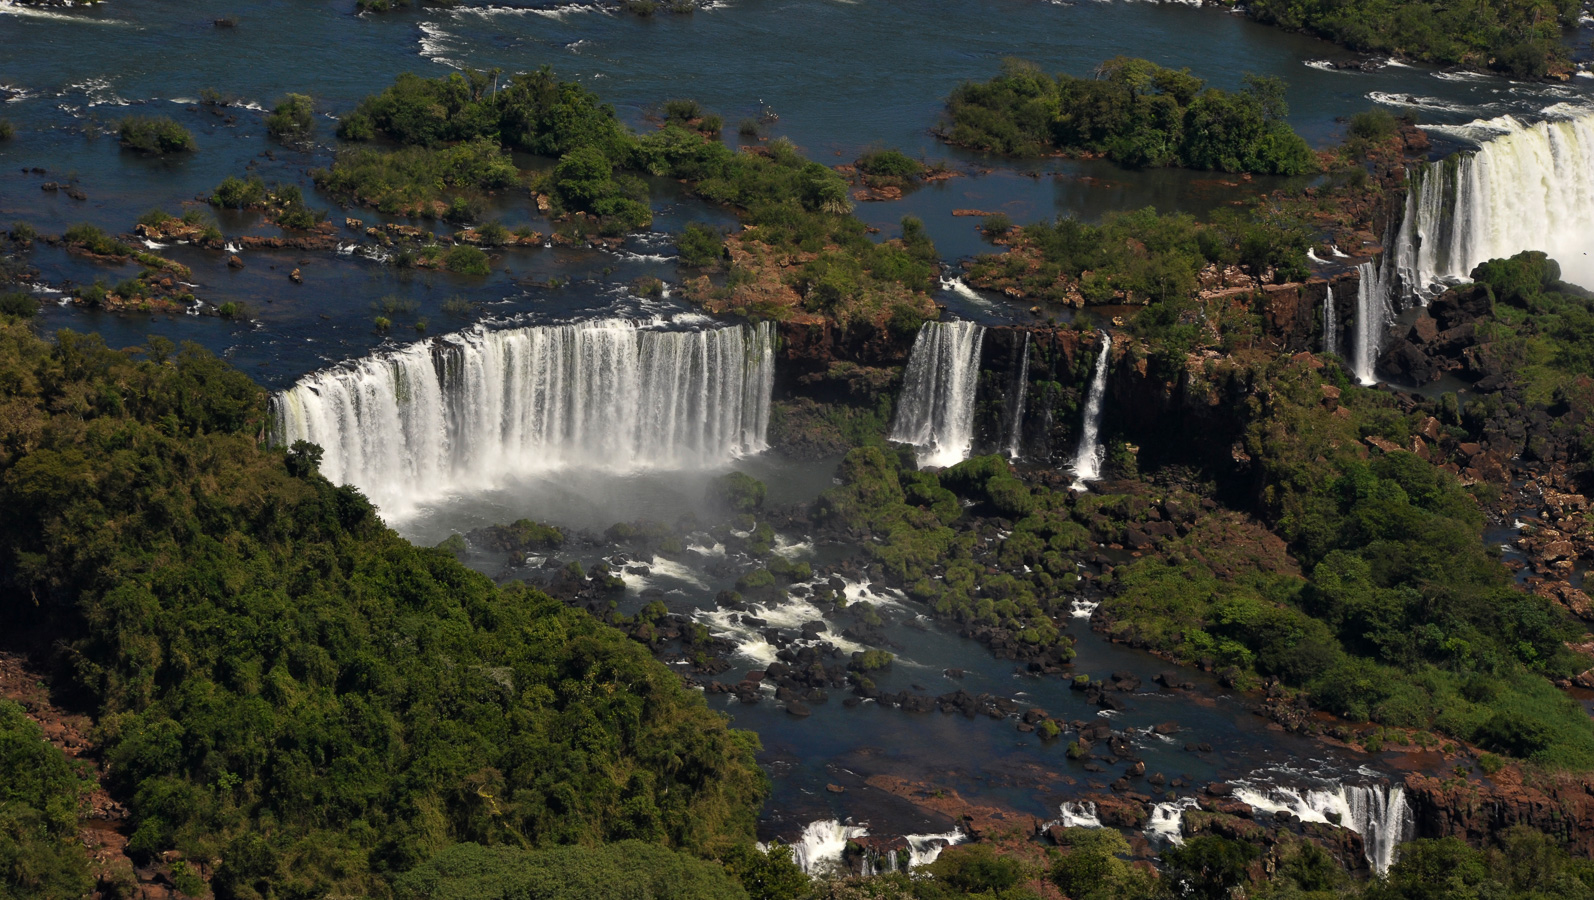 Cataratas del Iguazu [180 mm, 1/400 sec at f / 13, ISO 800]